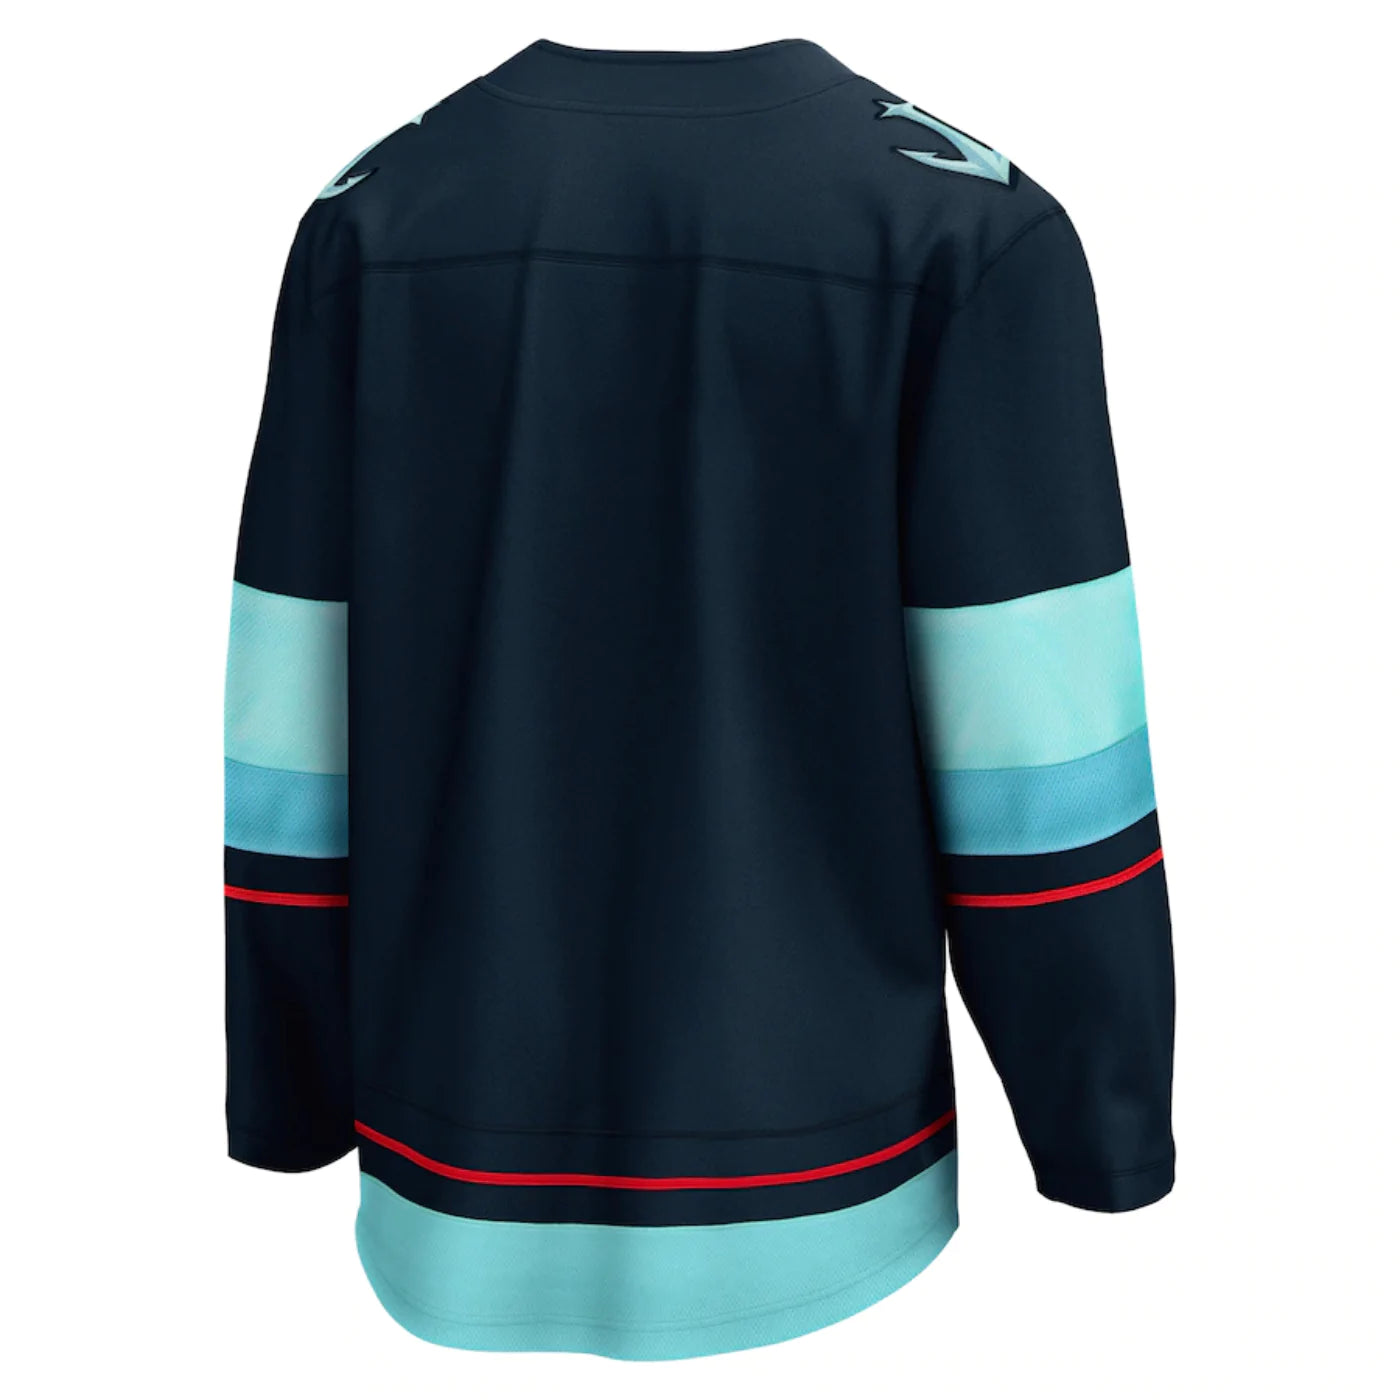 NHL Seattle Kraken Custom Name Number 2023 Mix Jersey T-Shirt